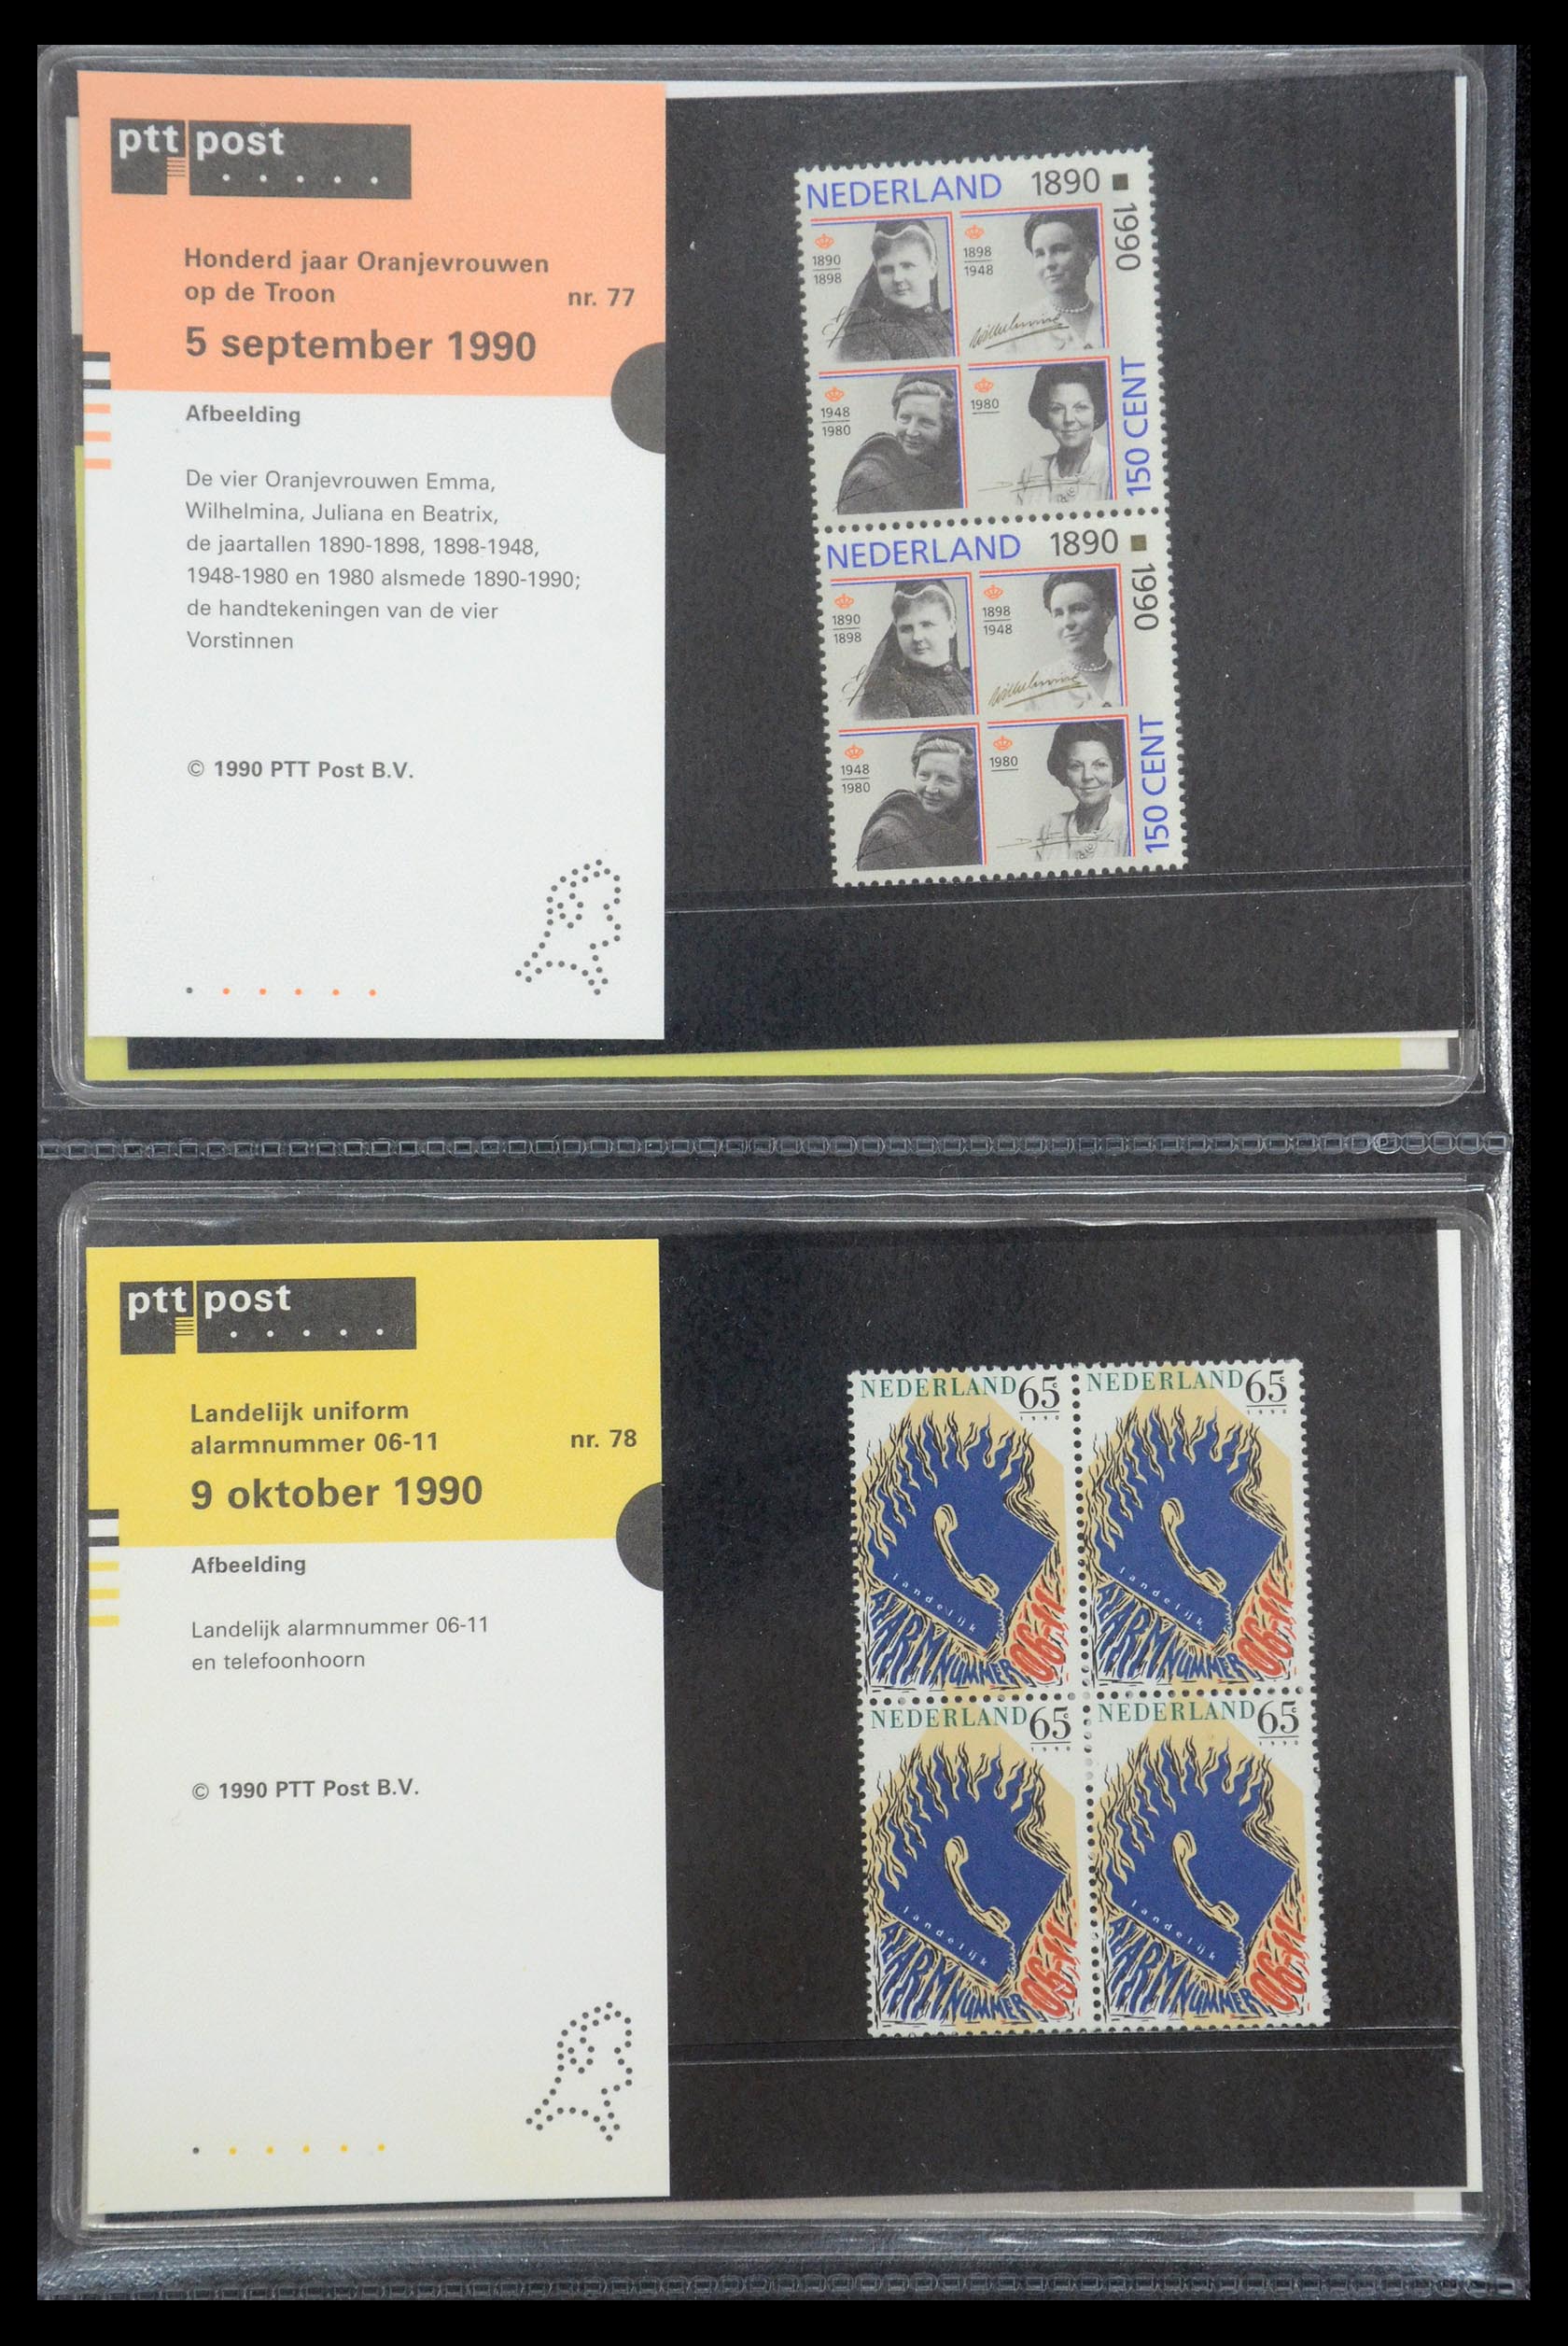 35187 039 - Stamp Collection 35187 Netherlands PTT presentation packs 1982-2019!